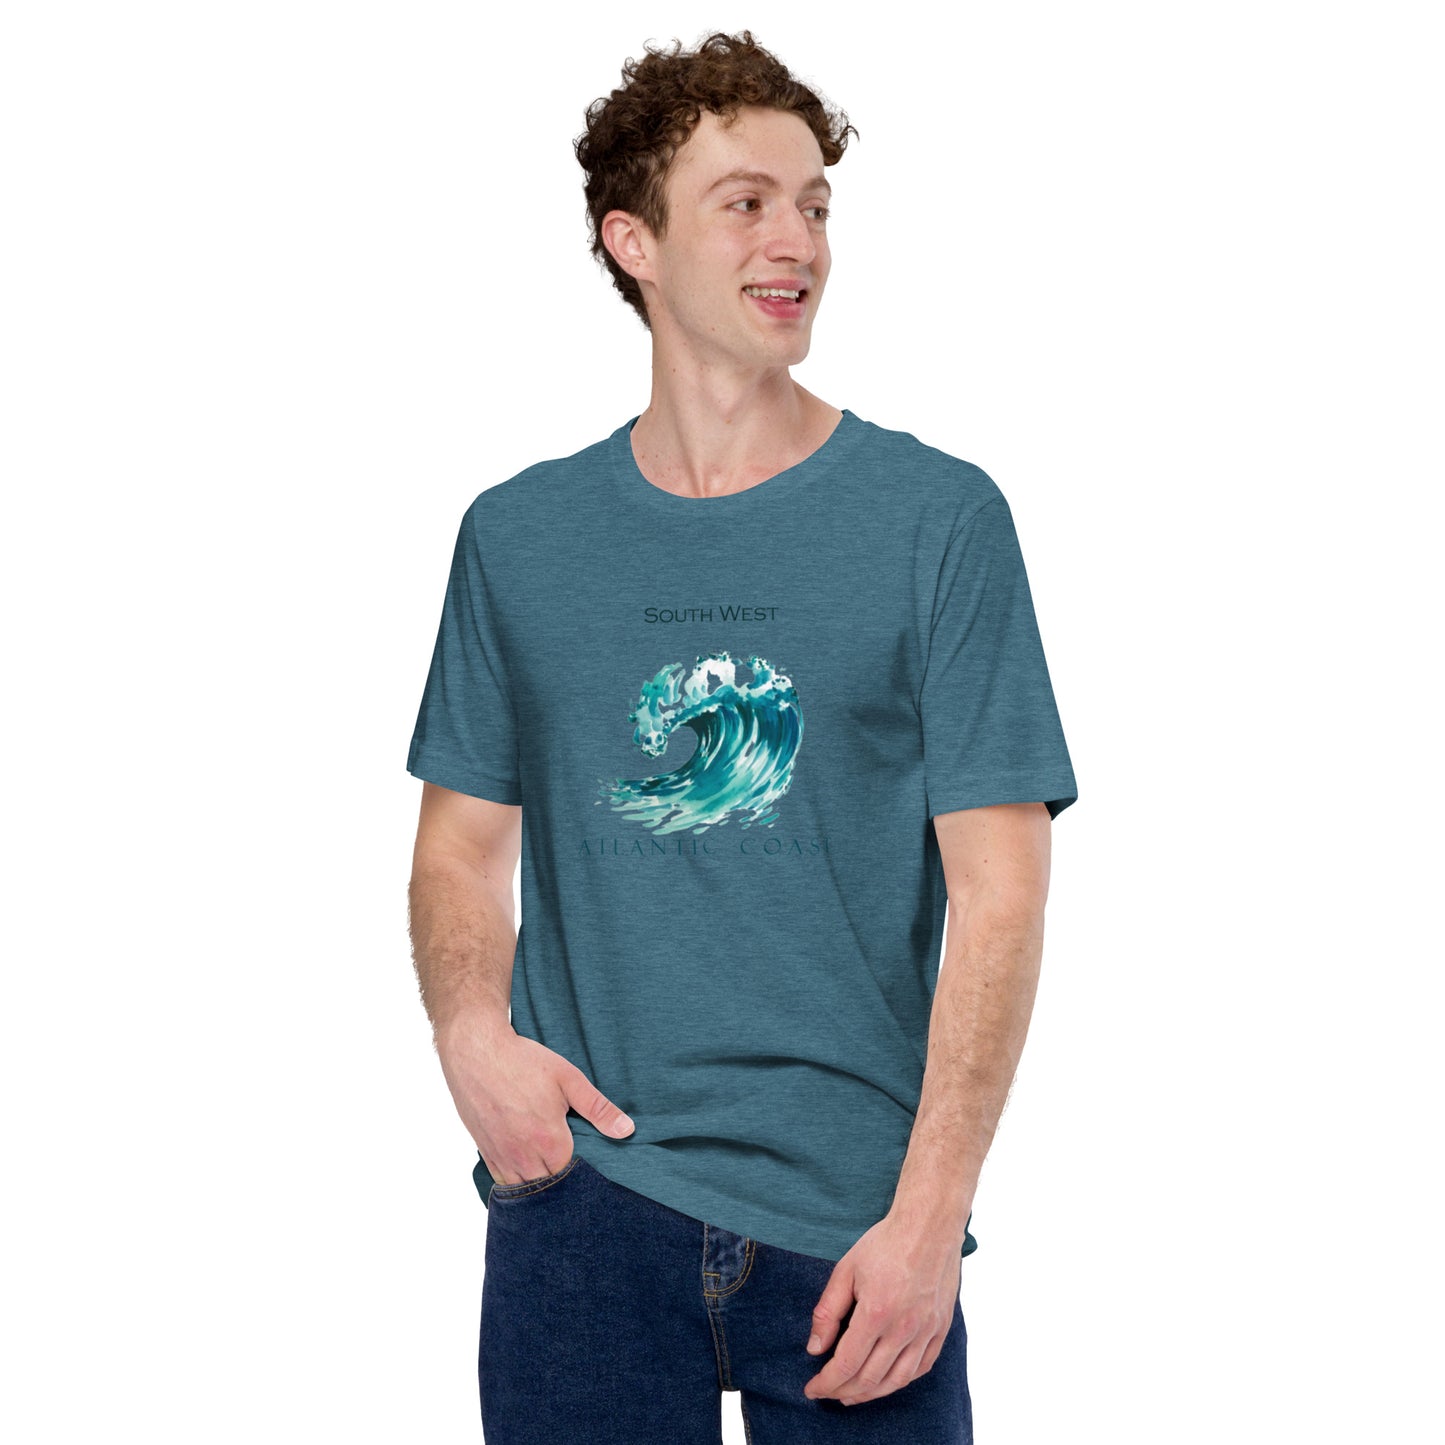 
                  
                    Atlantic Coast superbe T-shirt unisexe à porter pour une balade en bord d'océan
                  
                